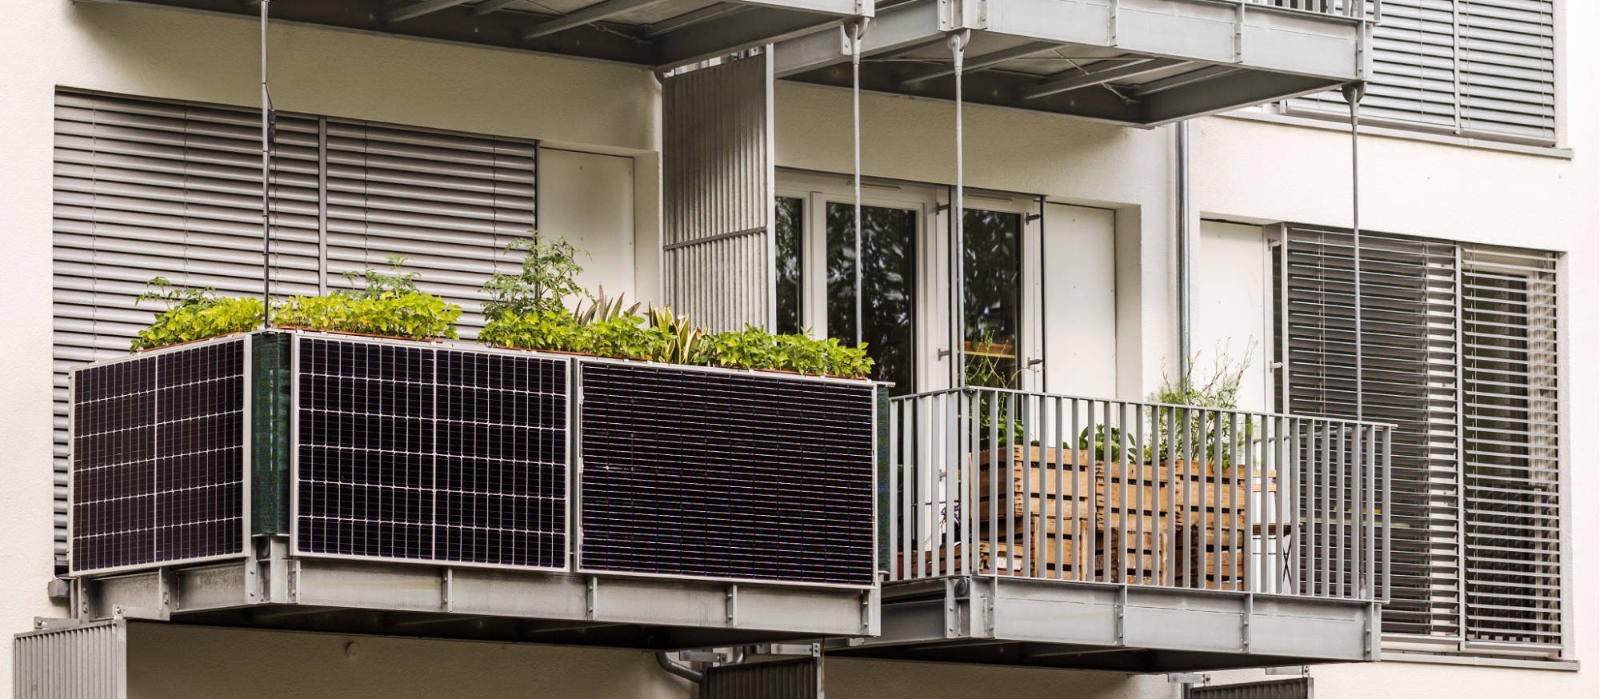 Solaranlagen für deinen Balkon